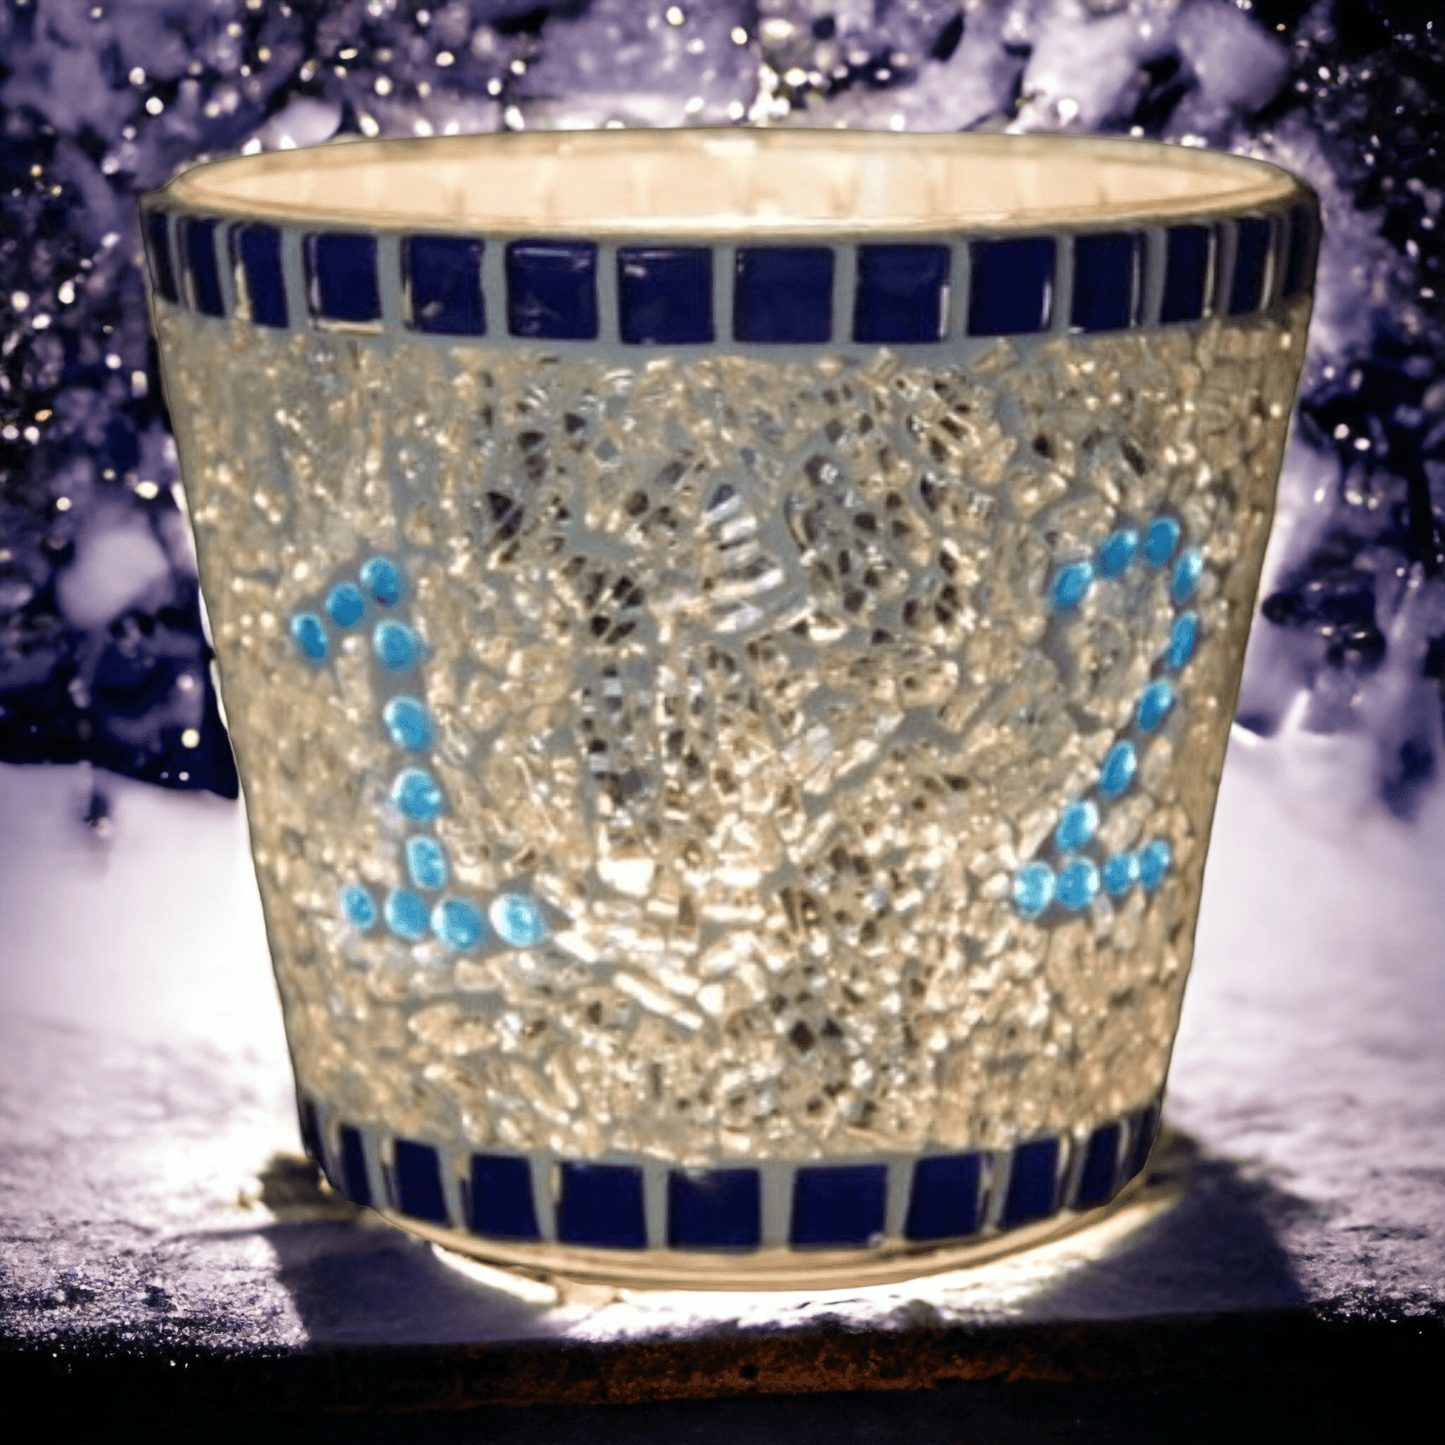 Mosaik Advent Windlicht blau silber 11 cm hoch - handgemacht - Mosaikkasten Advent aus alt mach neu